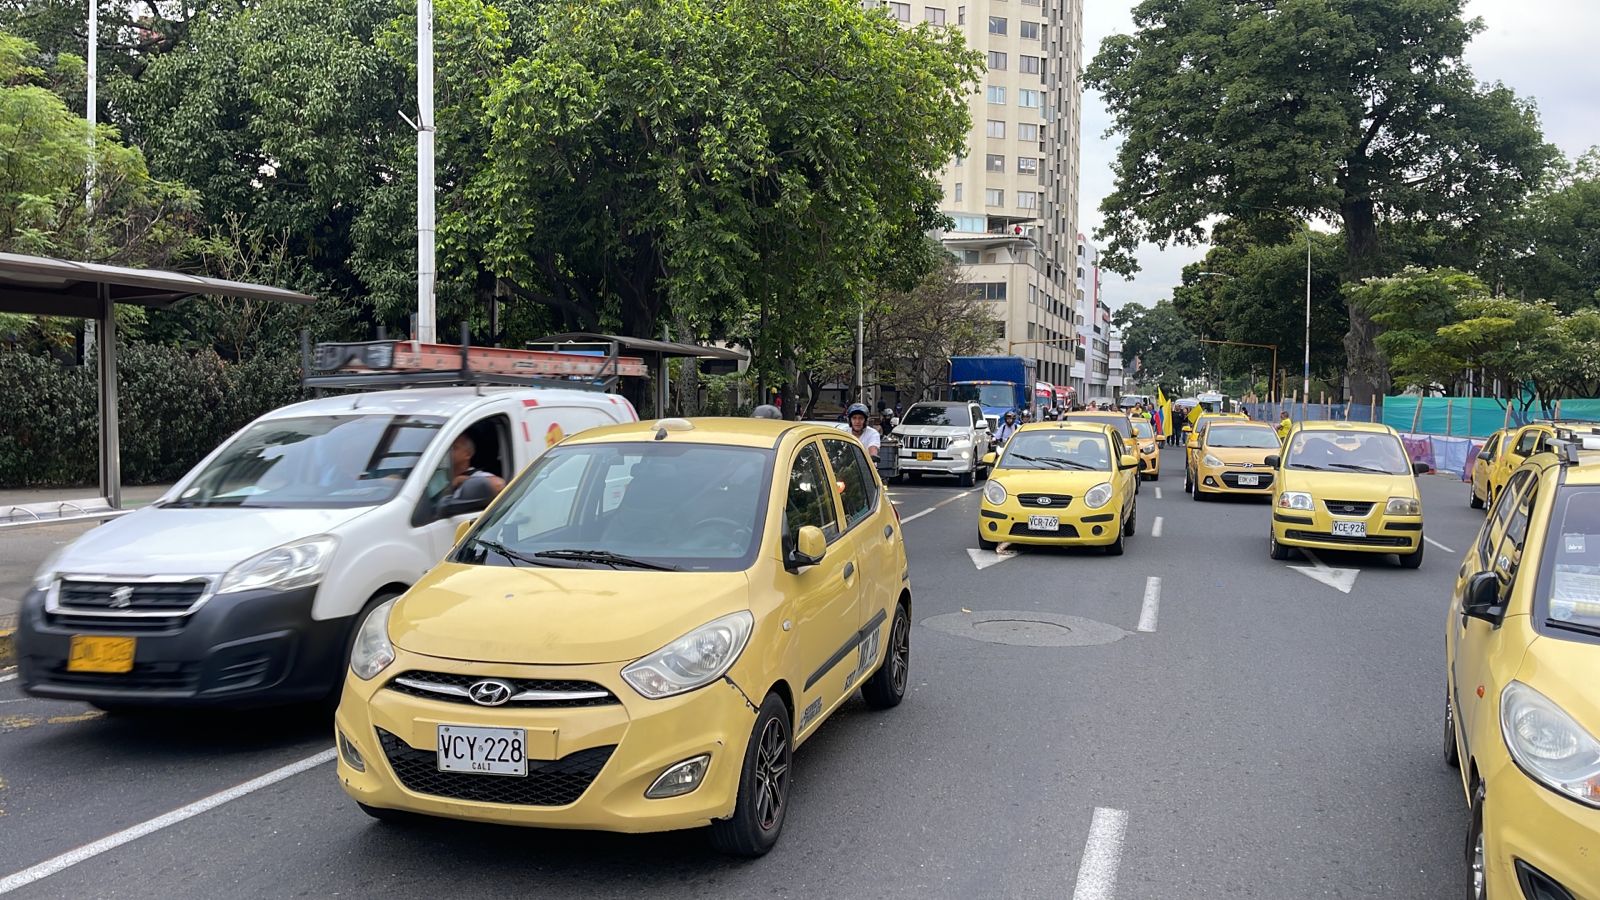 "No se van a permitir bloqueos": Estas serán las medidas durante paro de taxistas